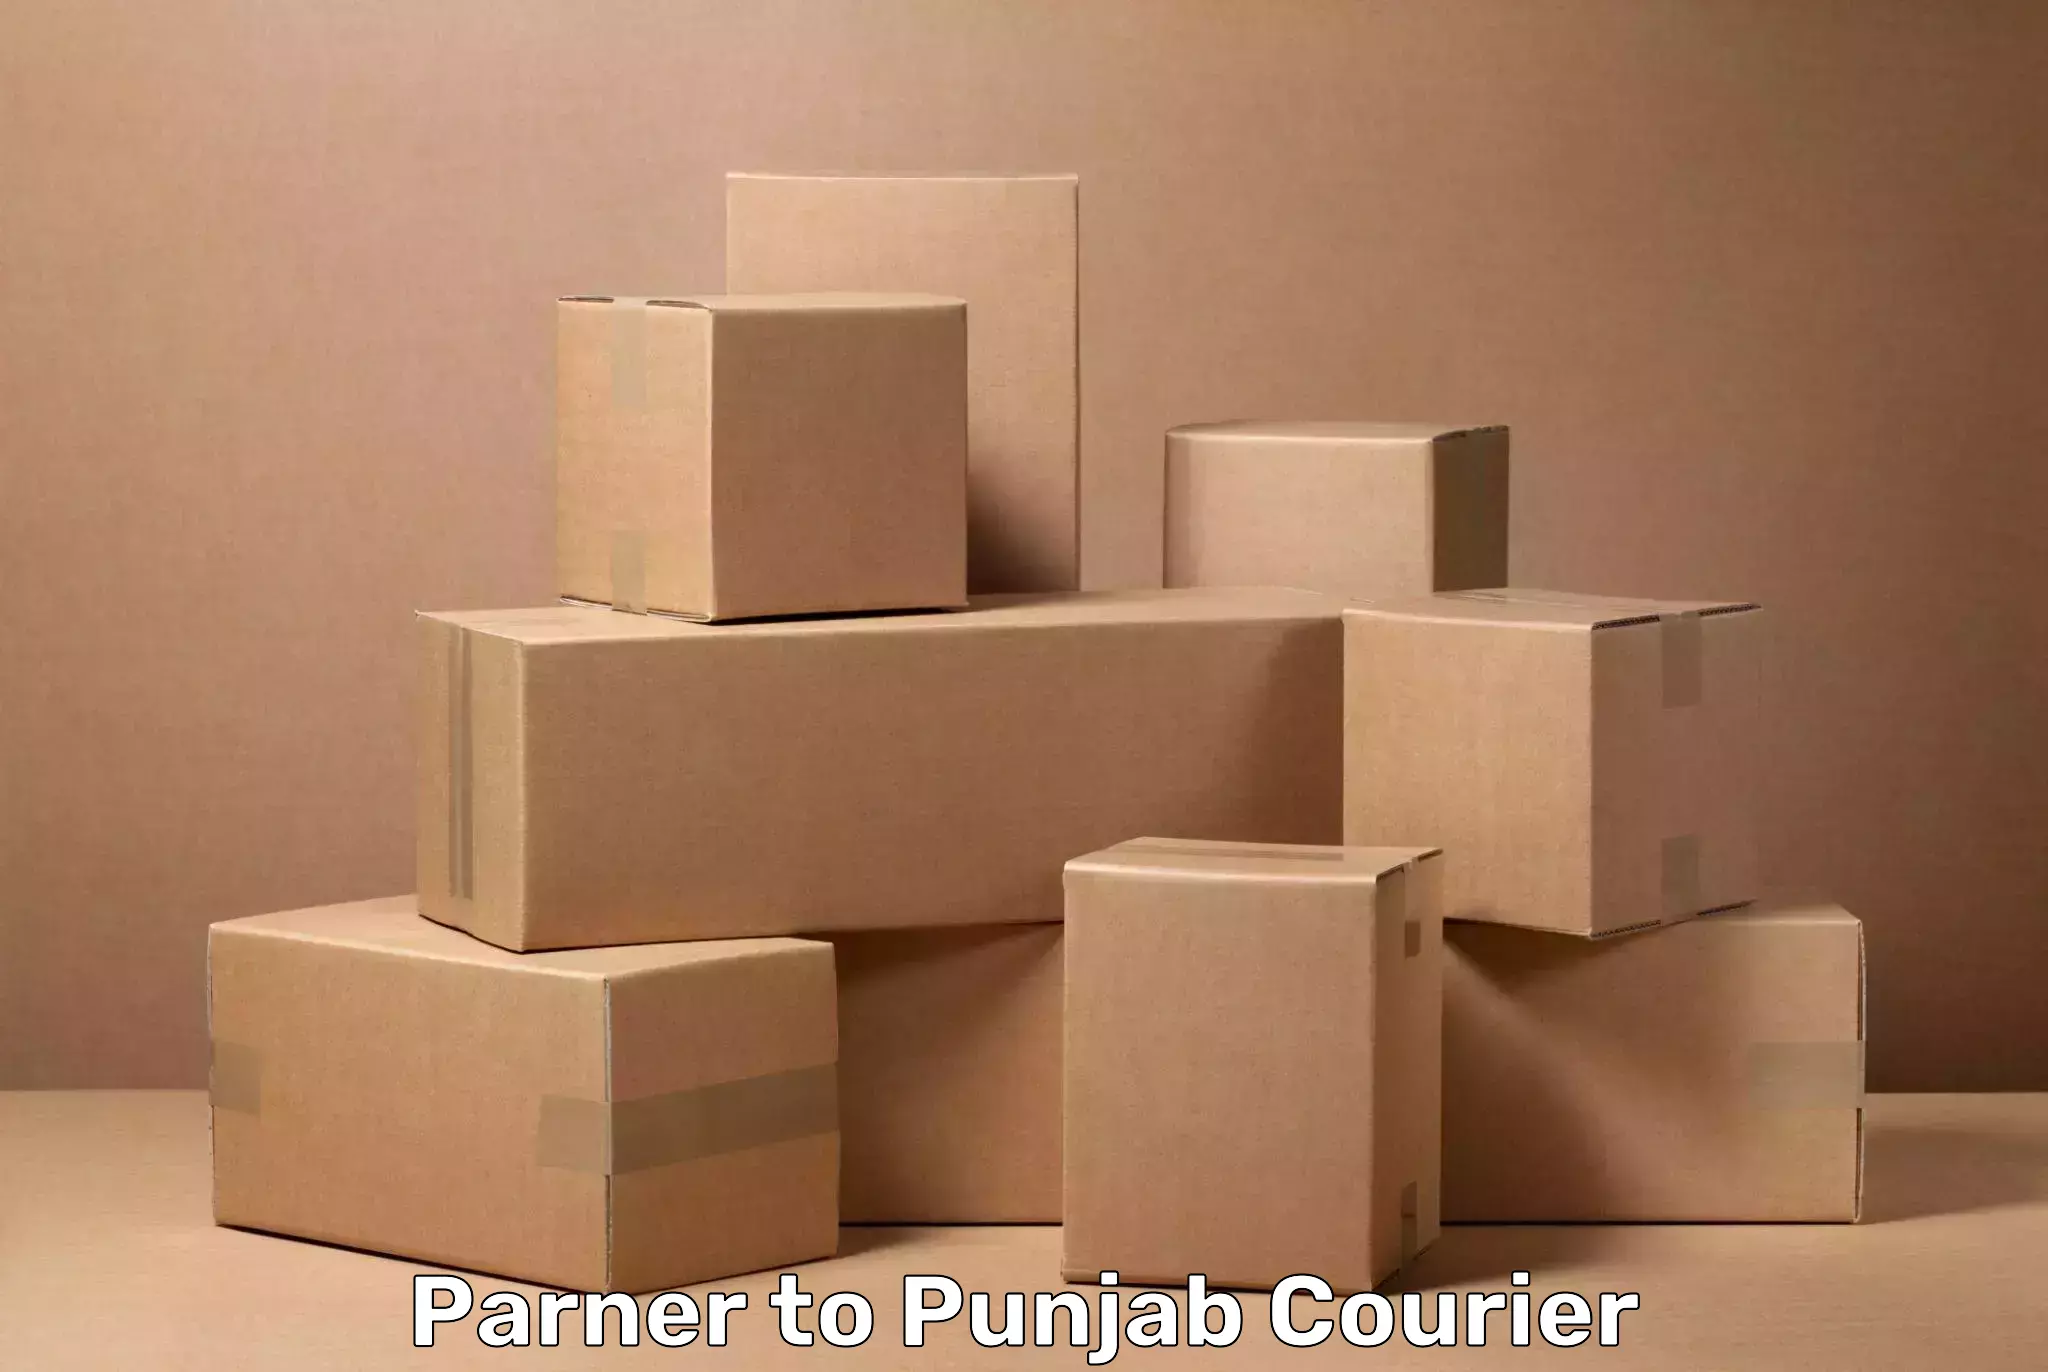 Efficient baggage transport Parner to Punjab